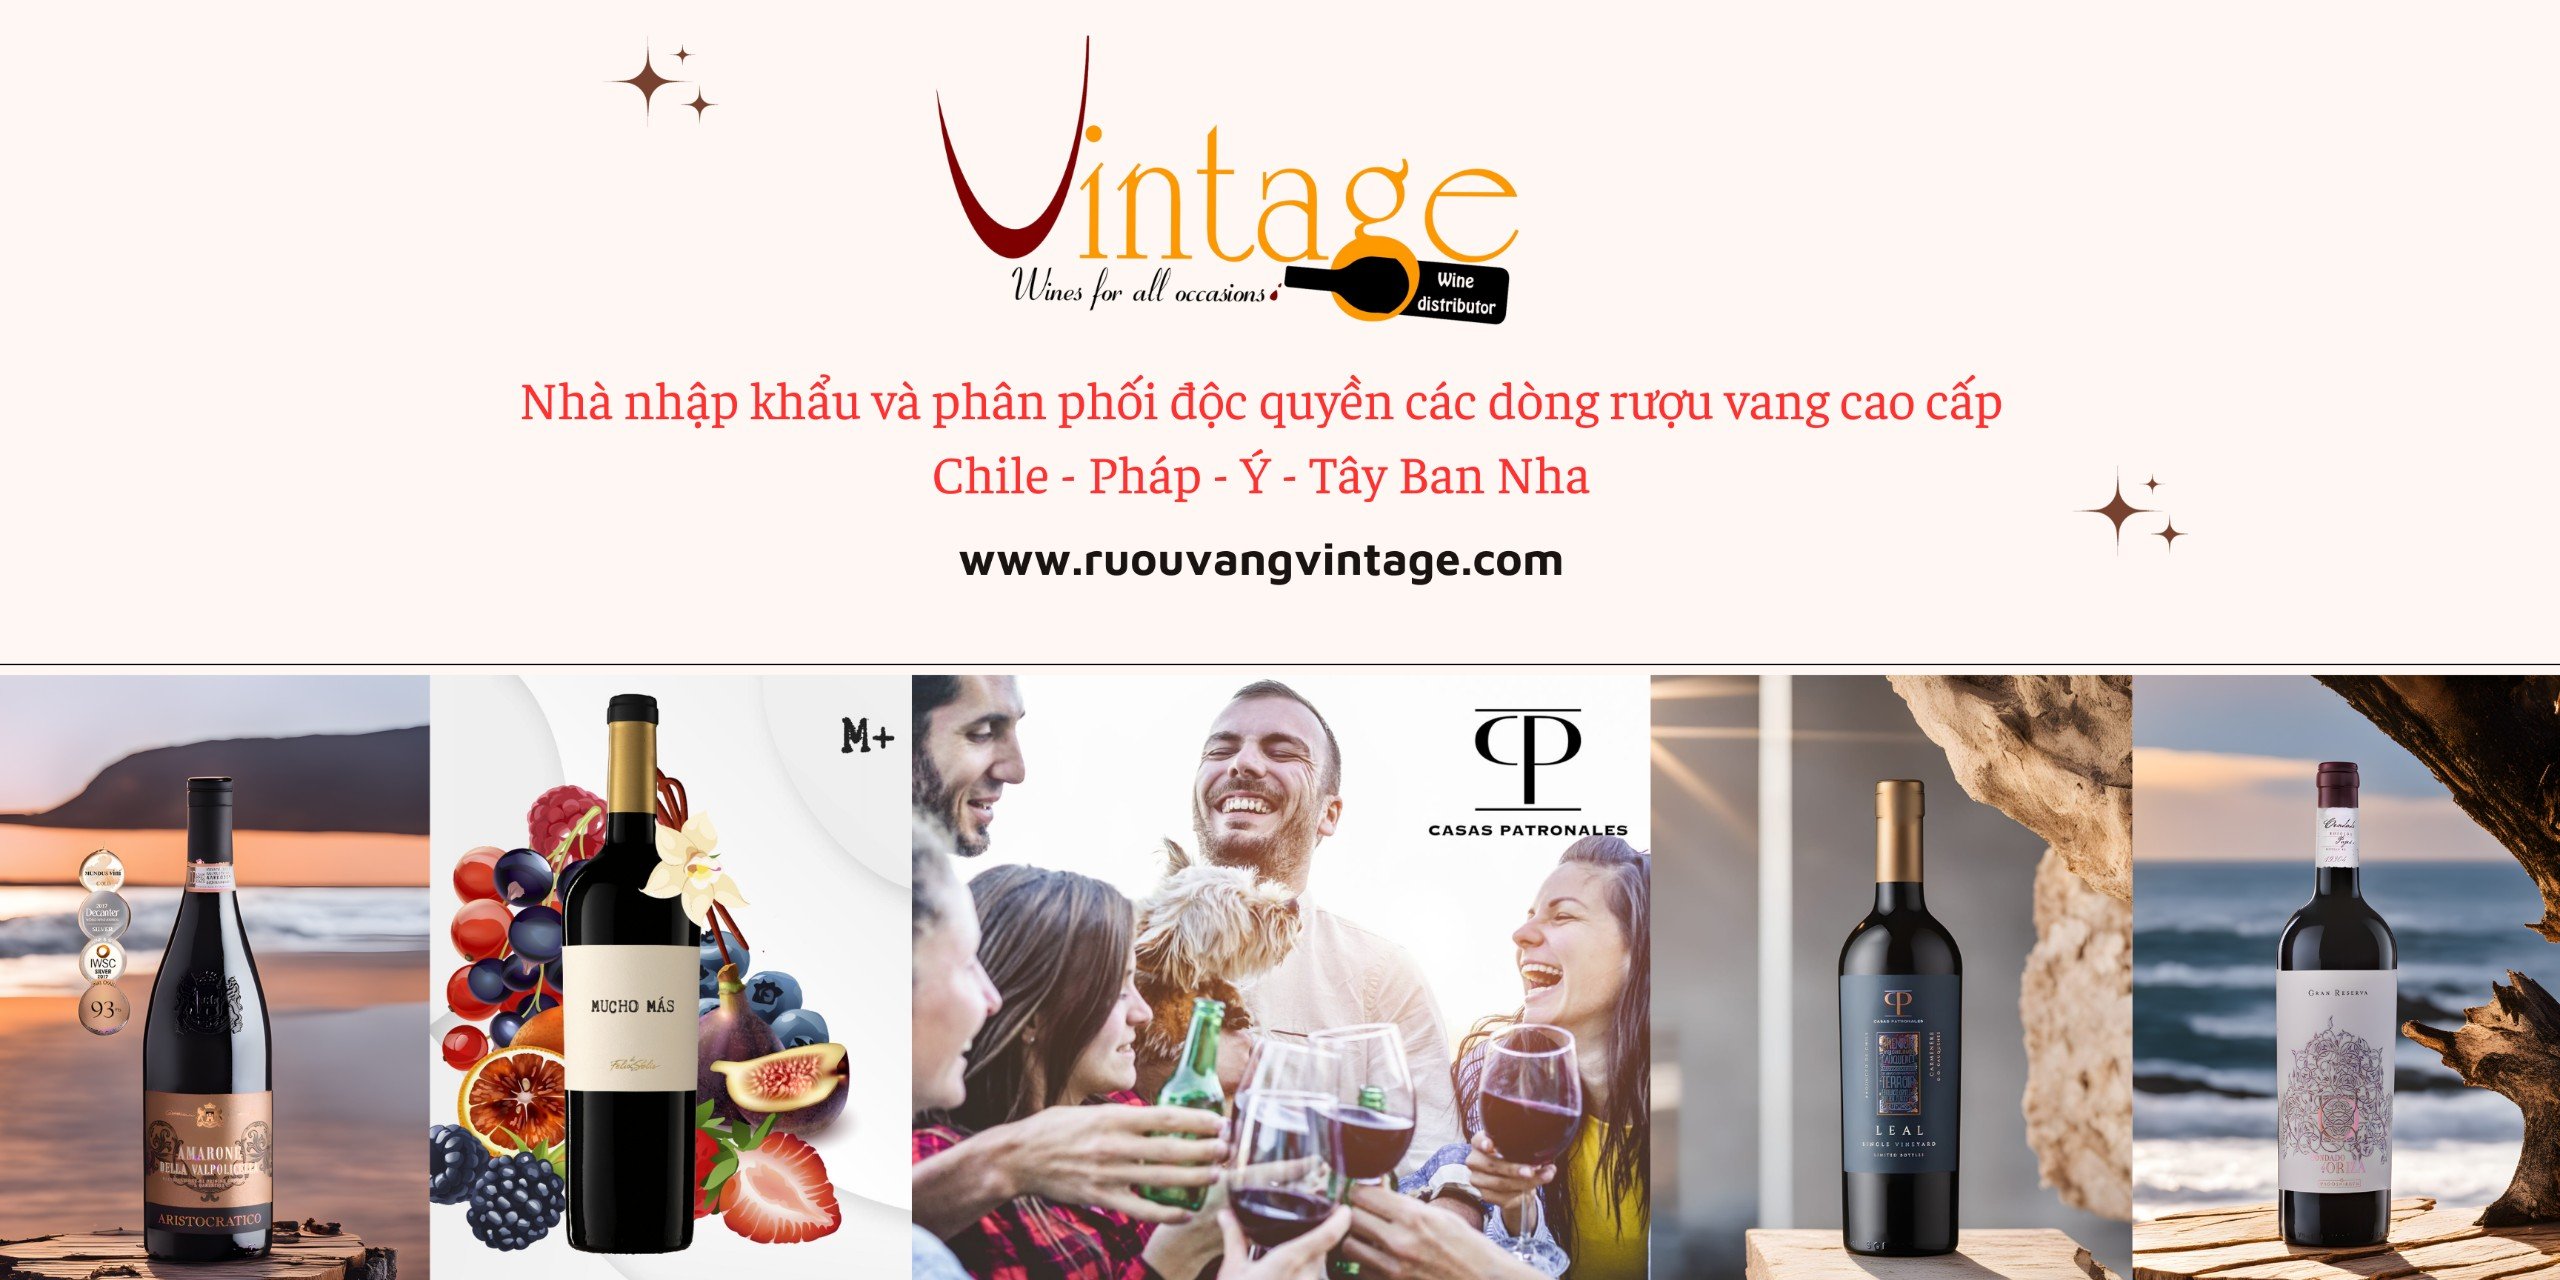 Ruouvangvintage.com - Nhà Nhập Khẩu & Phân Phối Rượu Vang Cao Cấp